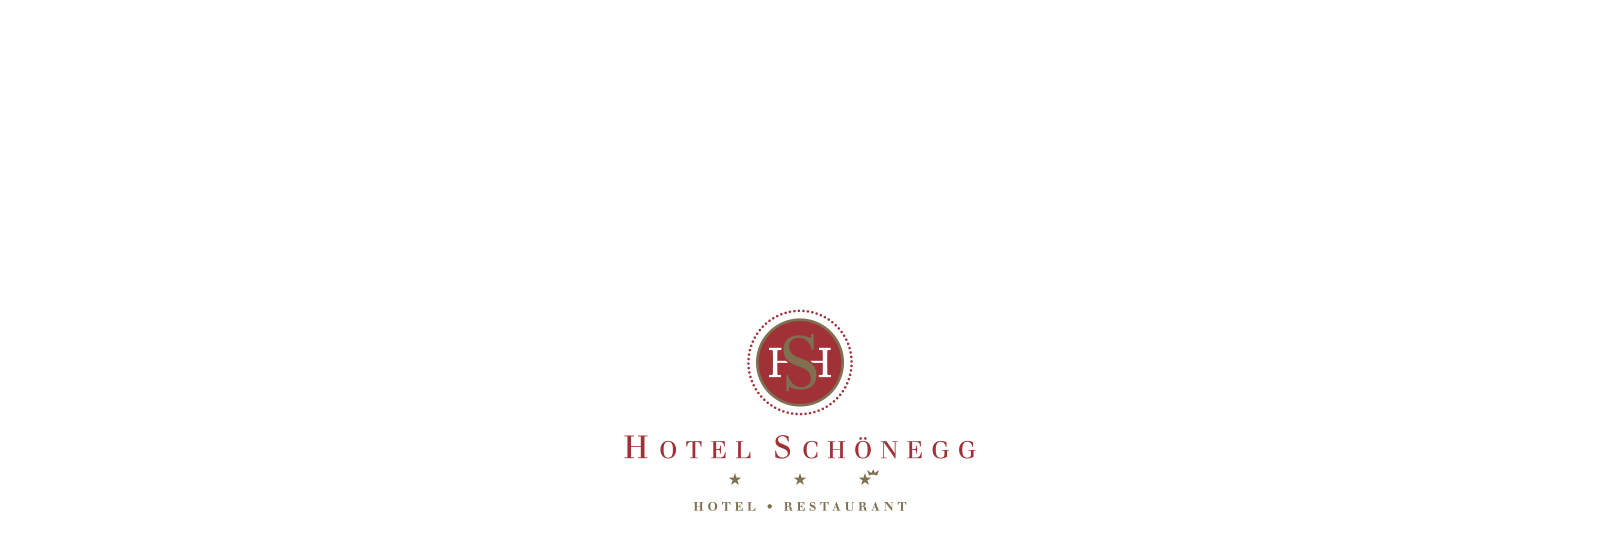 Hotel Schonegg logo1600x900 white bg